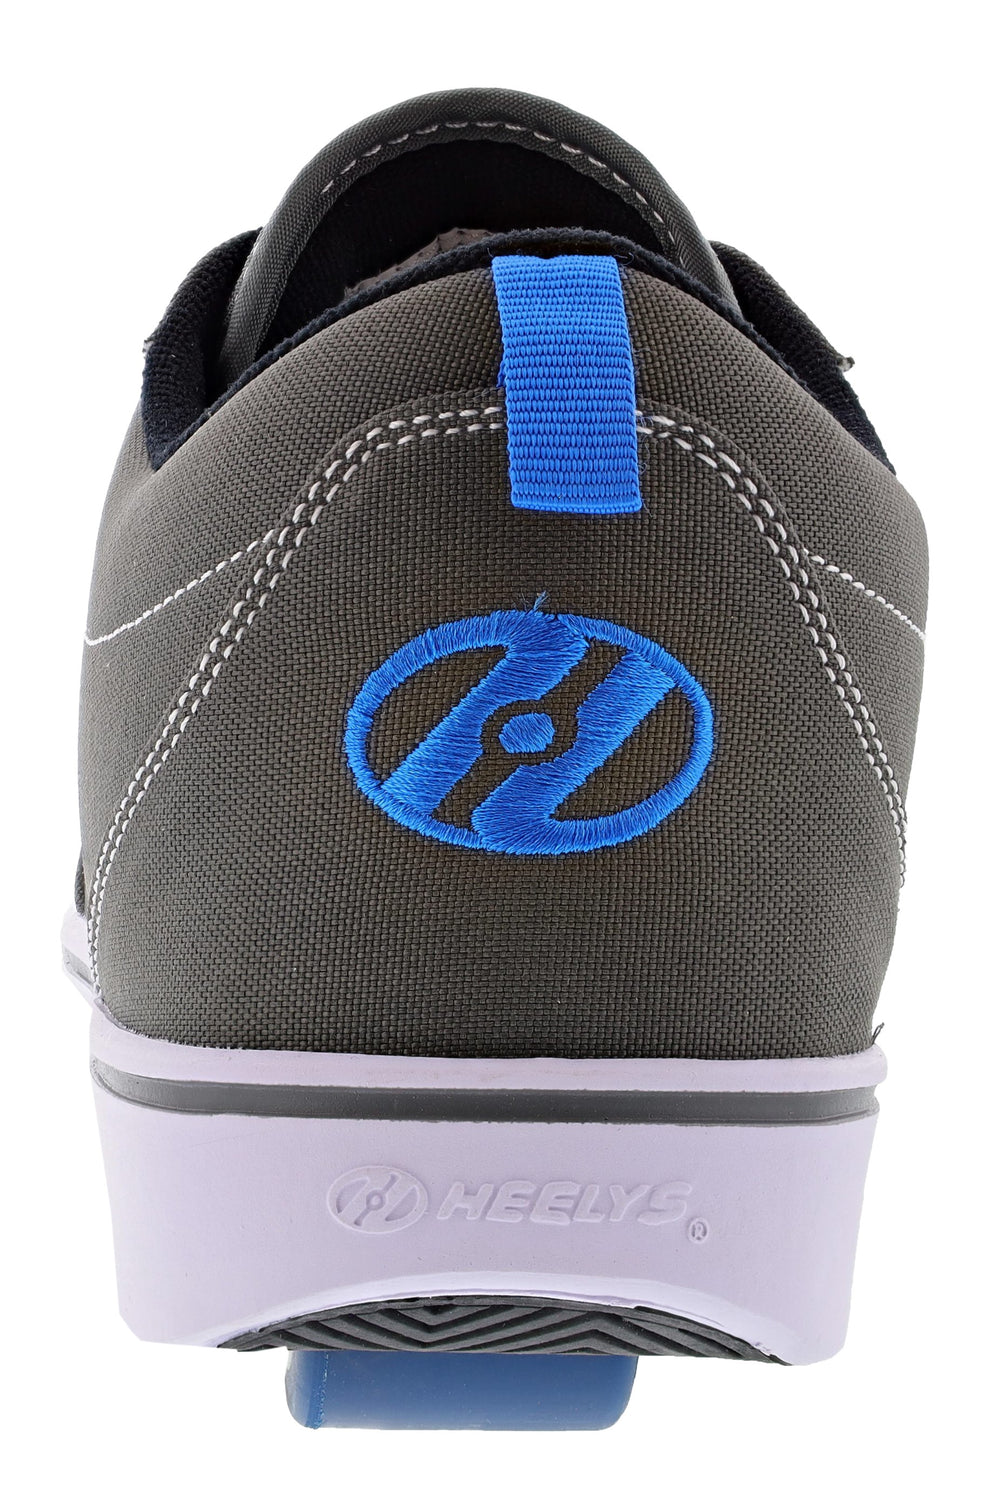 Heelys Shoes for adults GR8 Pro - Men's Shoe City